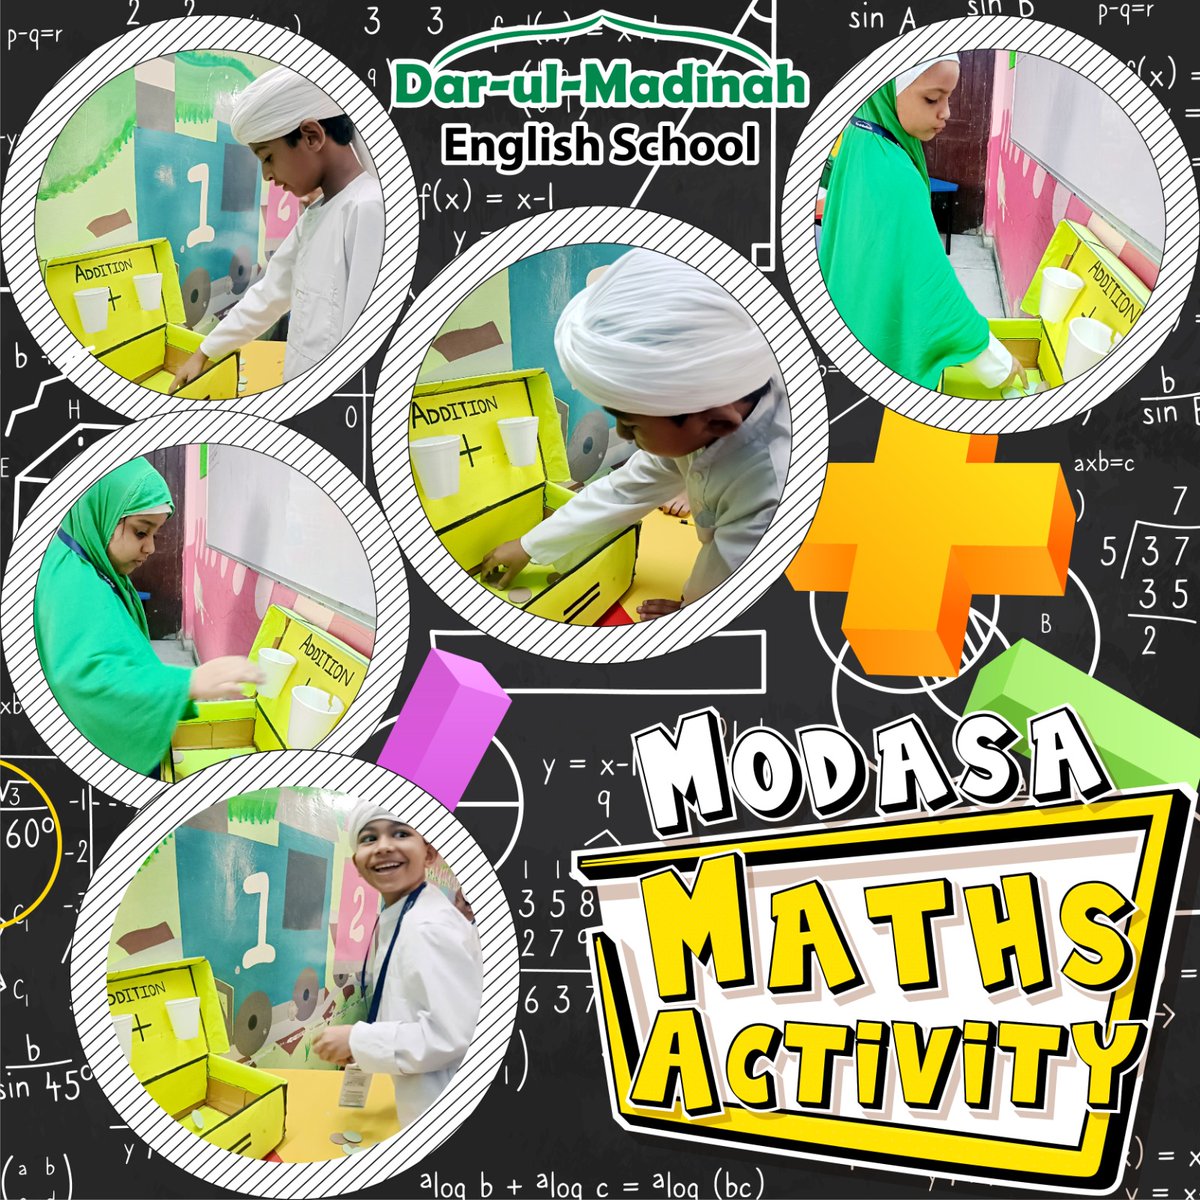 #mathsactivity #mathskills #mathstudent #mathsactivities #mathsart #maths #mathsforkids #numbers #school #schoolkids #kids #children #kidsactivity #activities #DarulMadinah